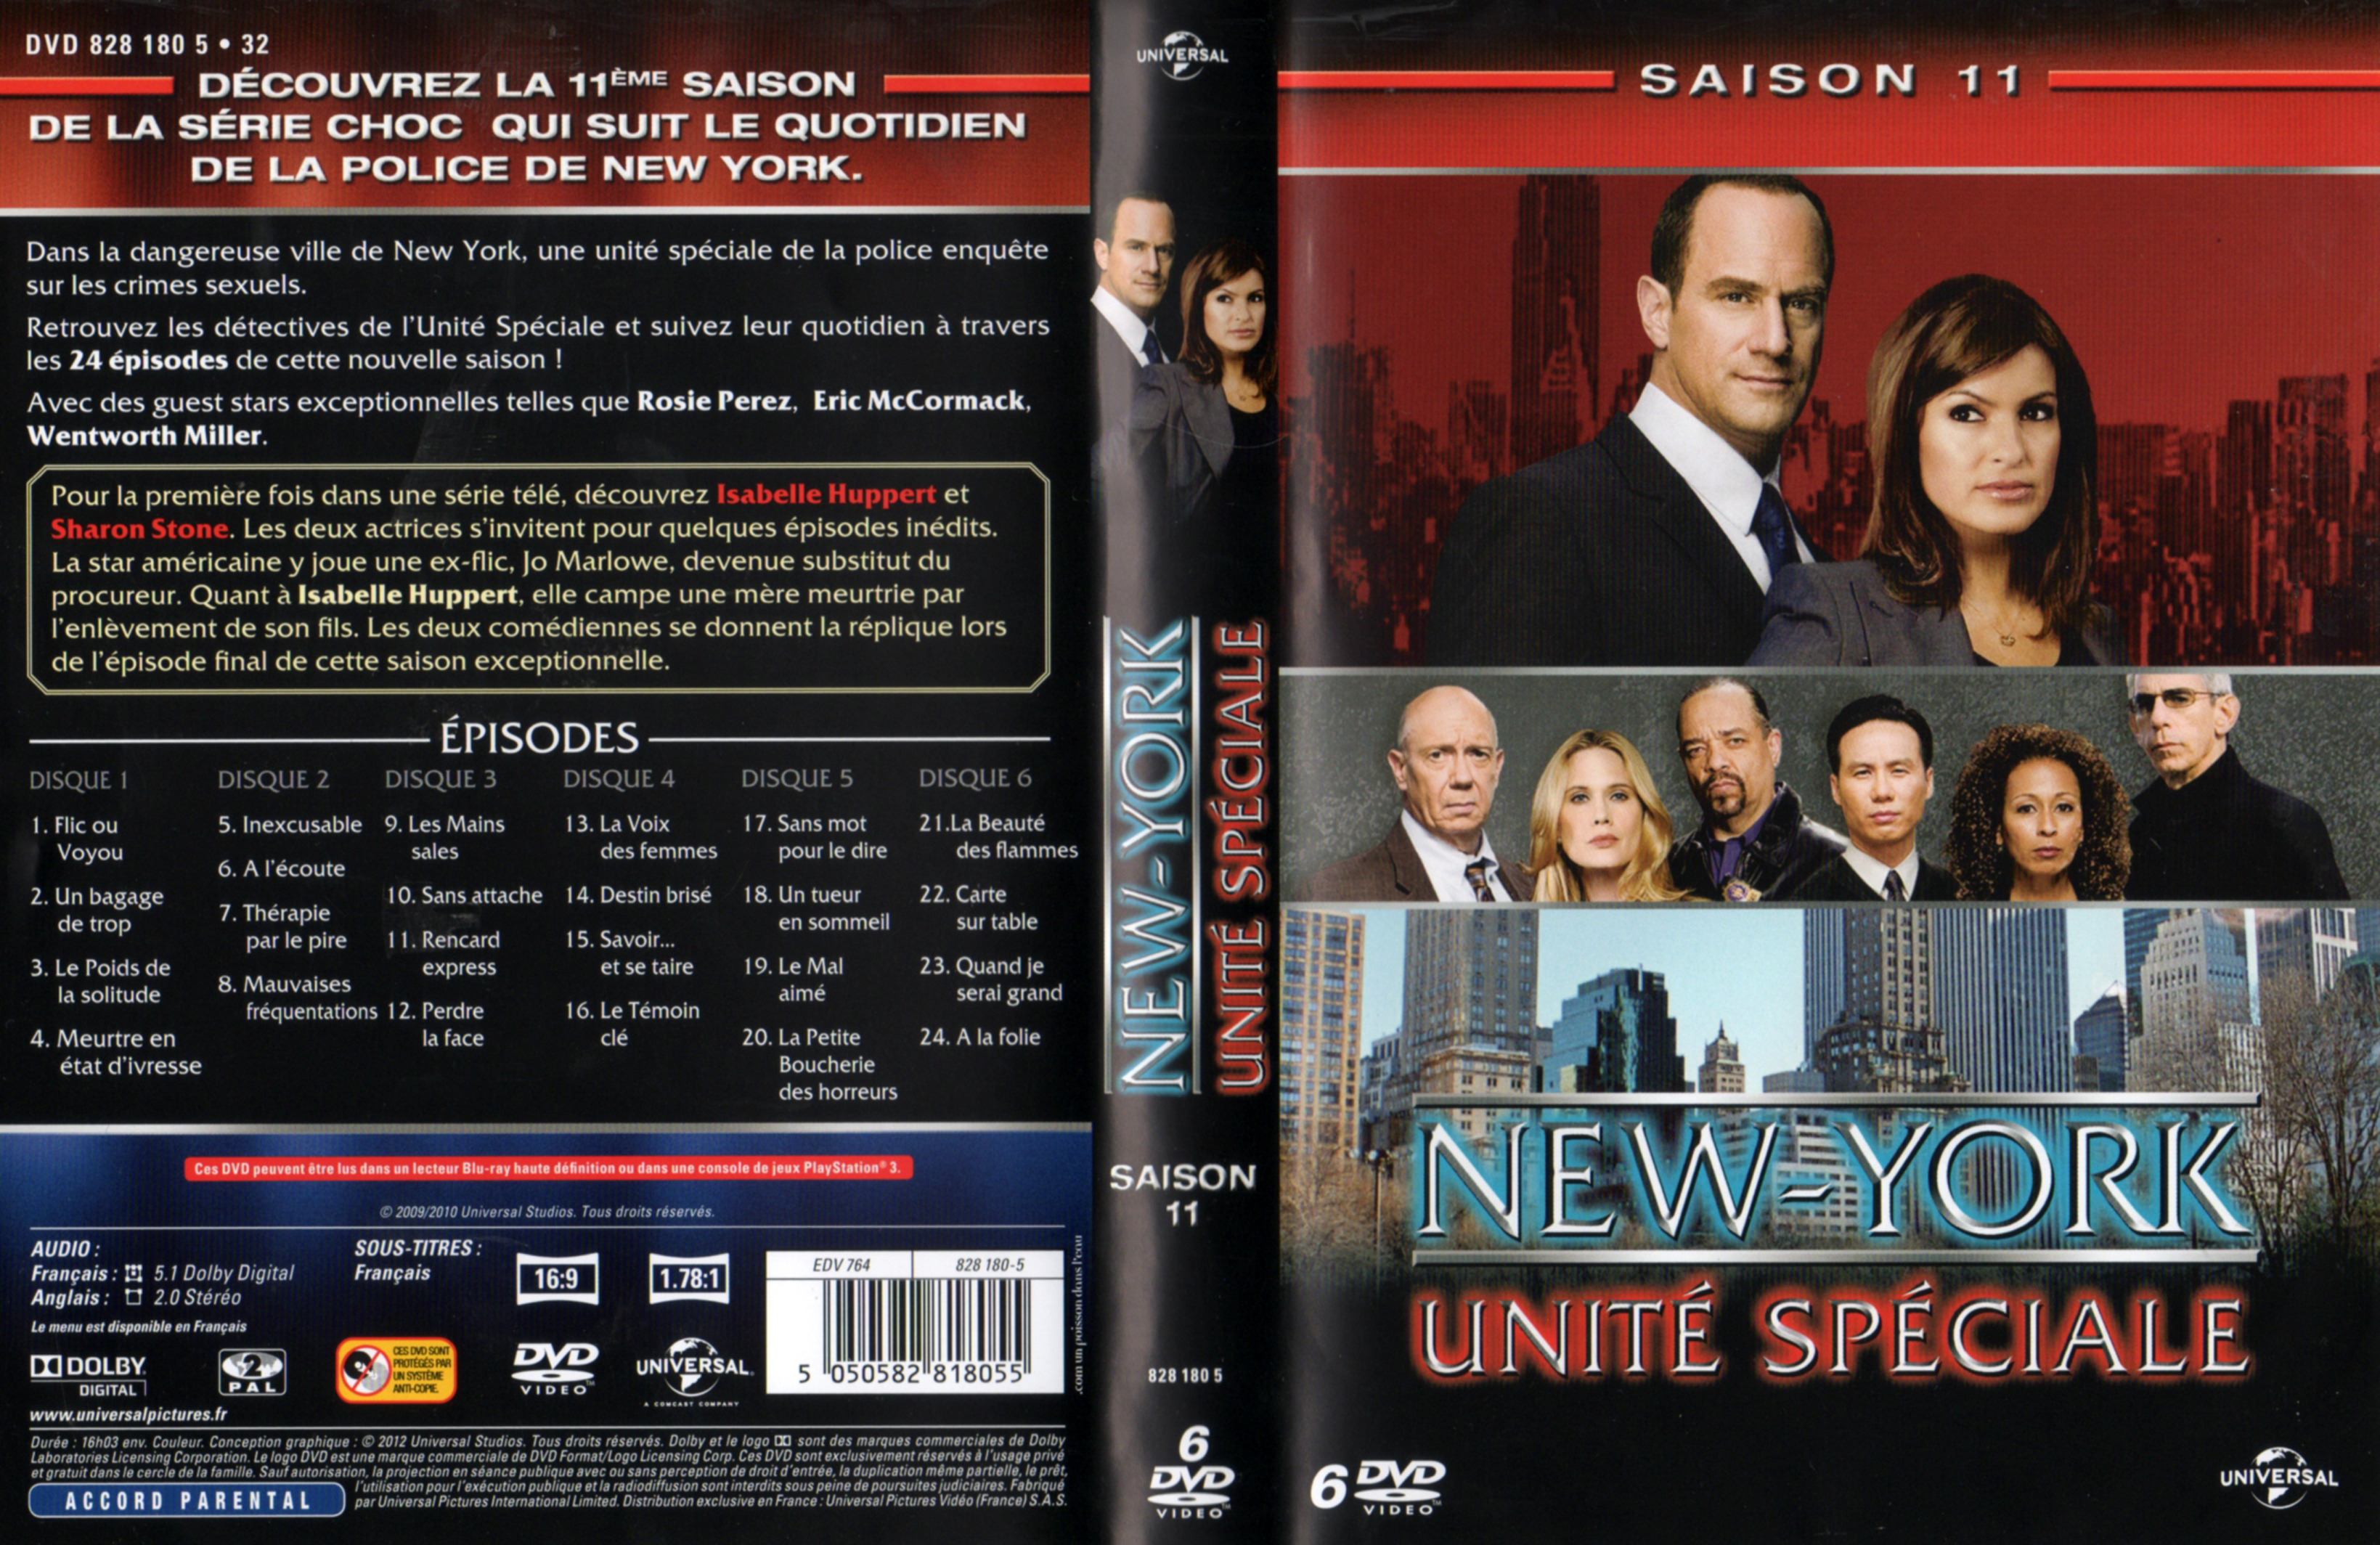 Jaquette DVD New York unit spciale saison 11 COFFRET